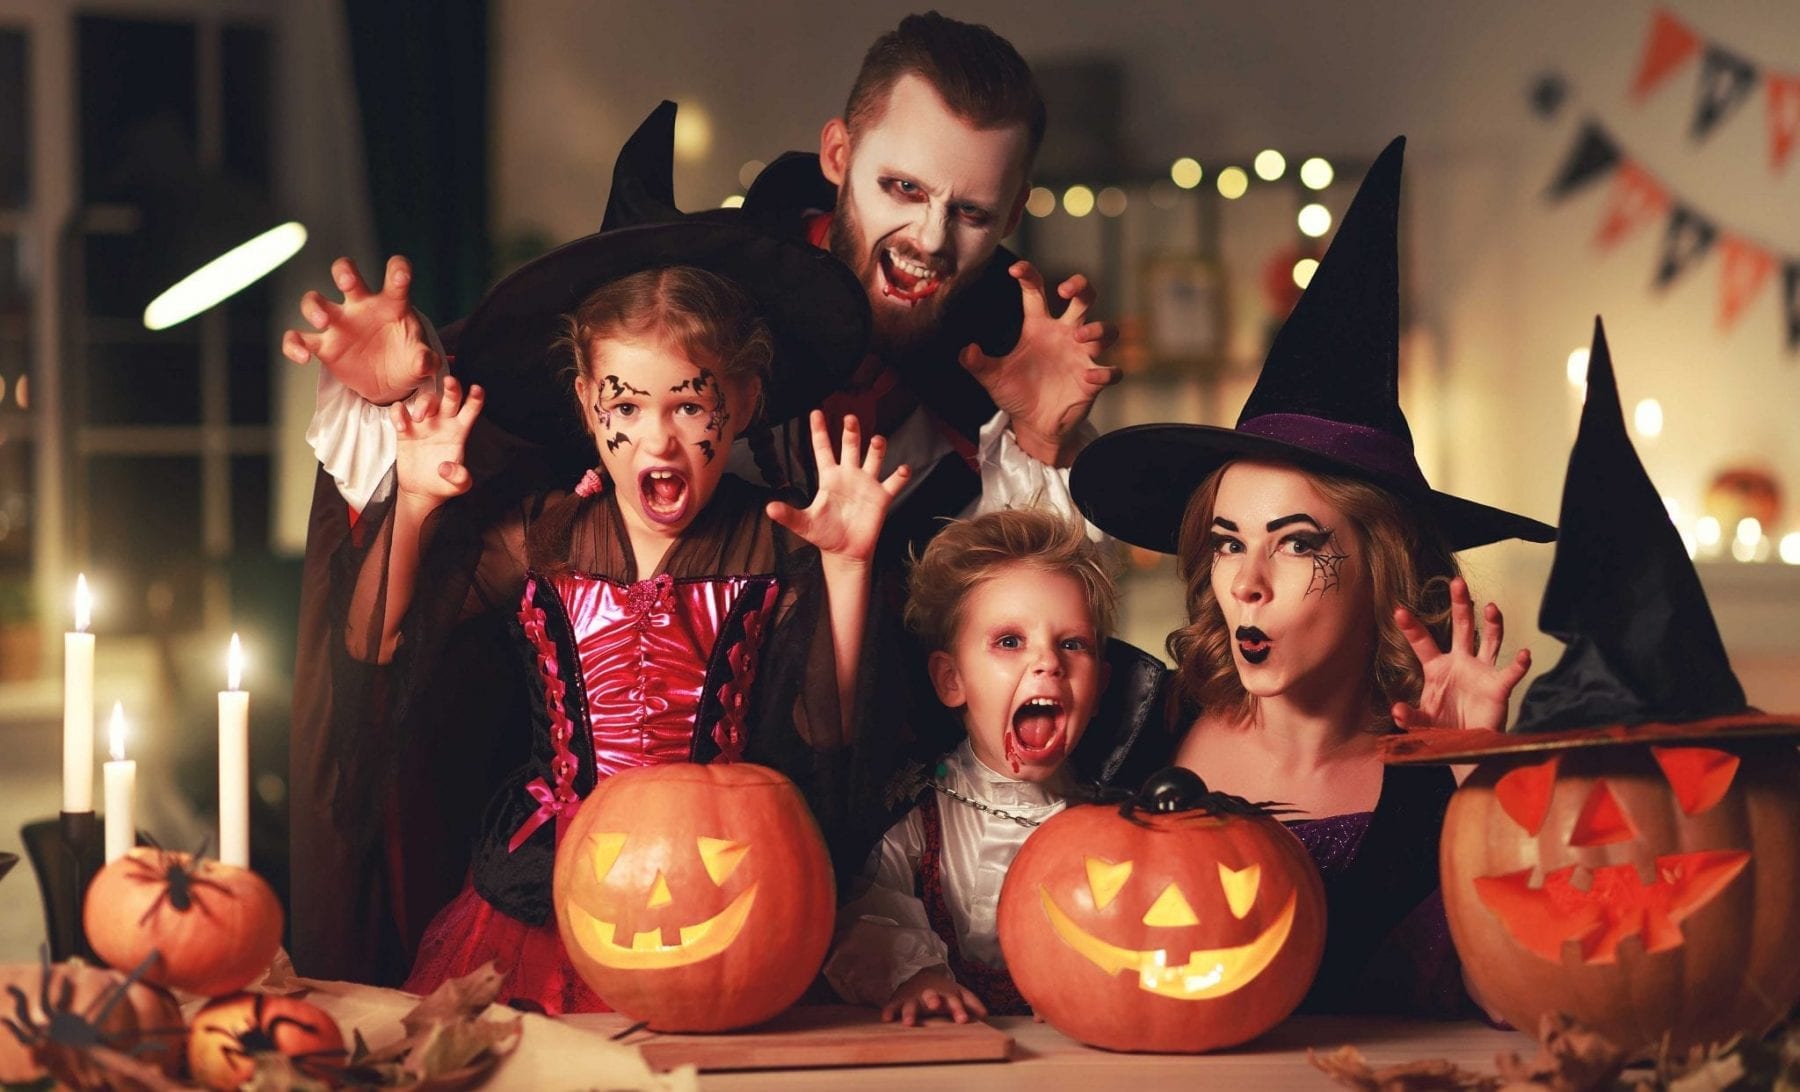 Family dressed as vampires for Halloween